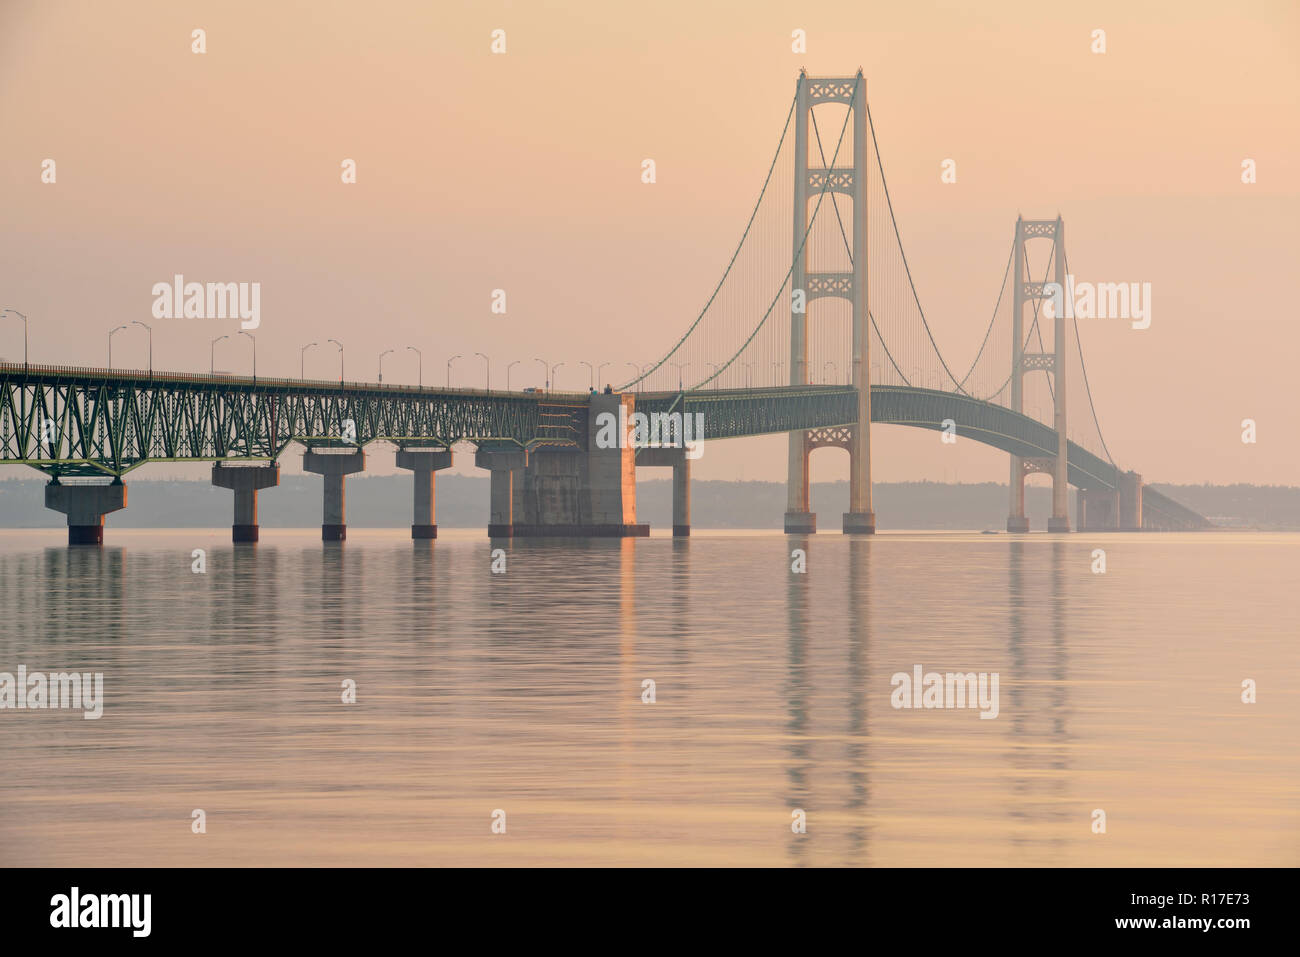 Mackinac Bridge across the Straits of Mackinac at dawn, Mackinaw city, Michigan, USA Stock Photo